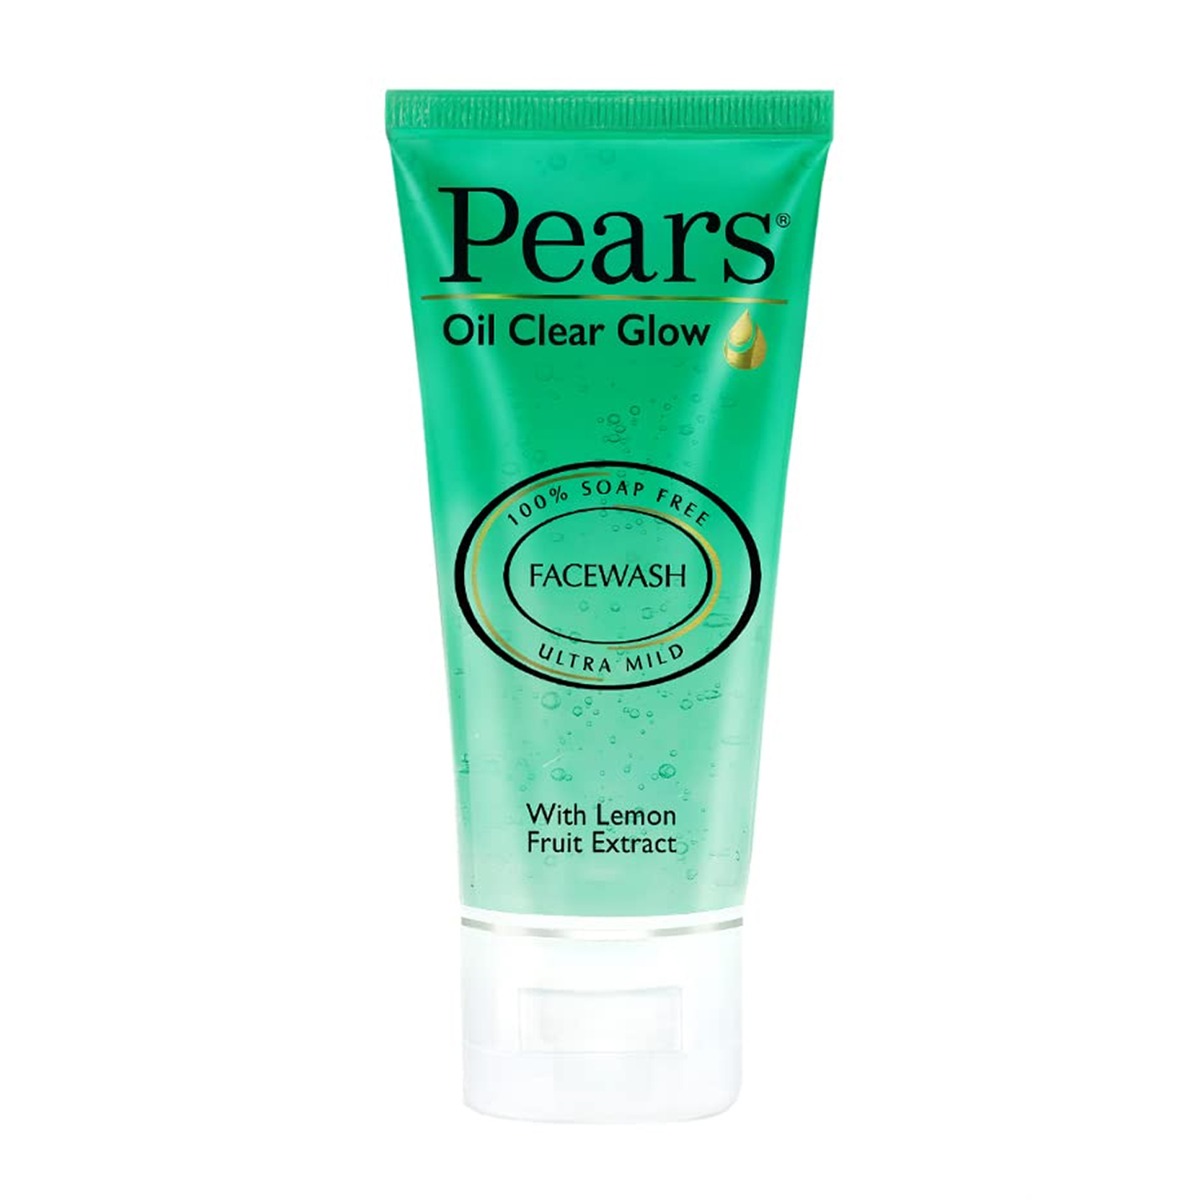 Pears Oil Clear Glow Facewash, 60gm